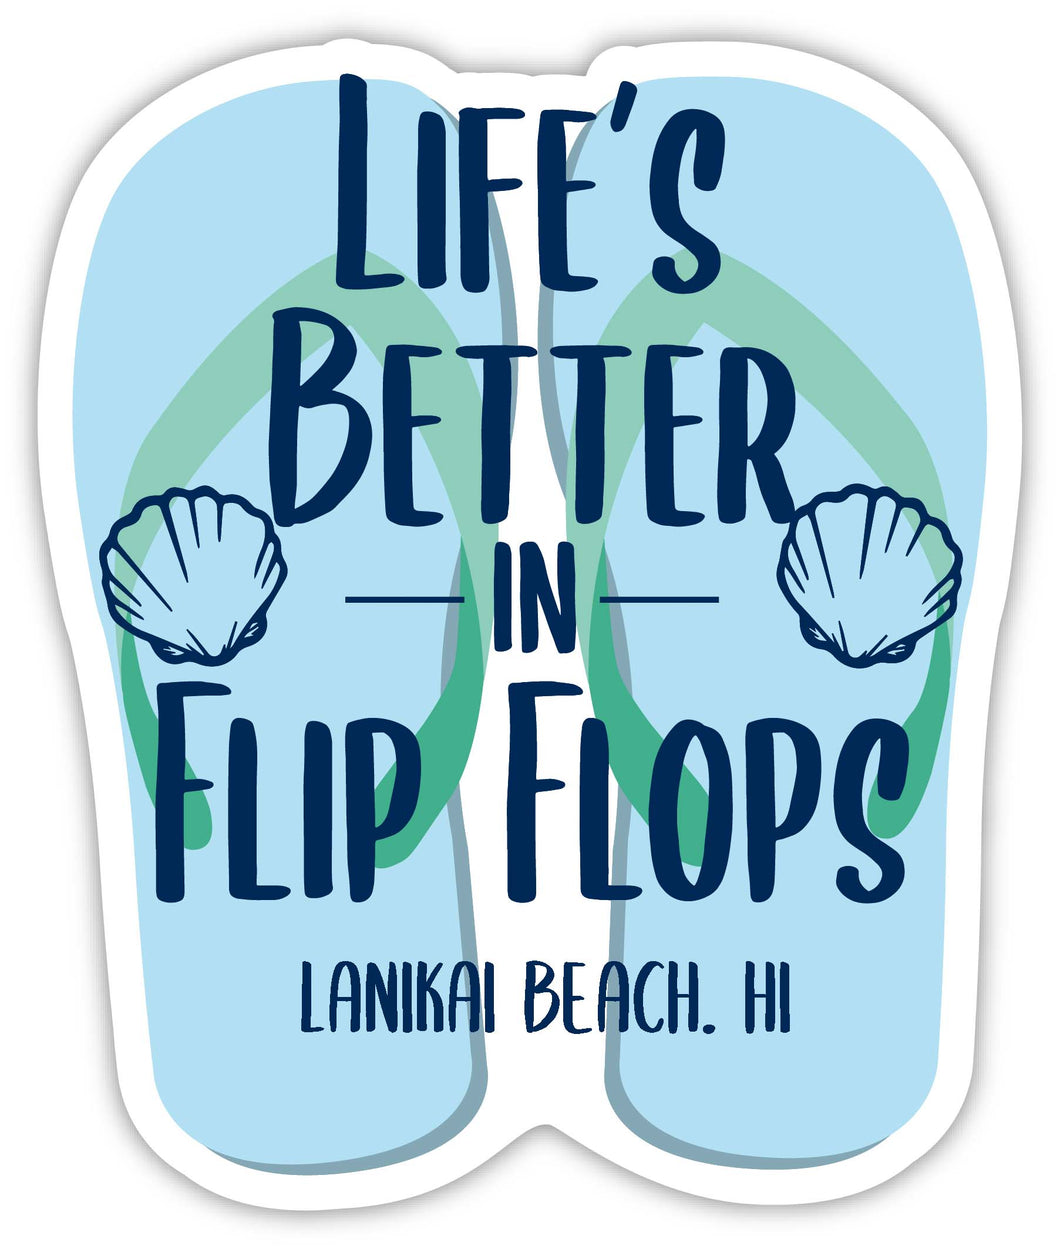 Lanikai Beach Hawaii Souvenir 4 Inch Vinyl Decal Sticker Flip Flop Design